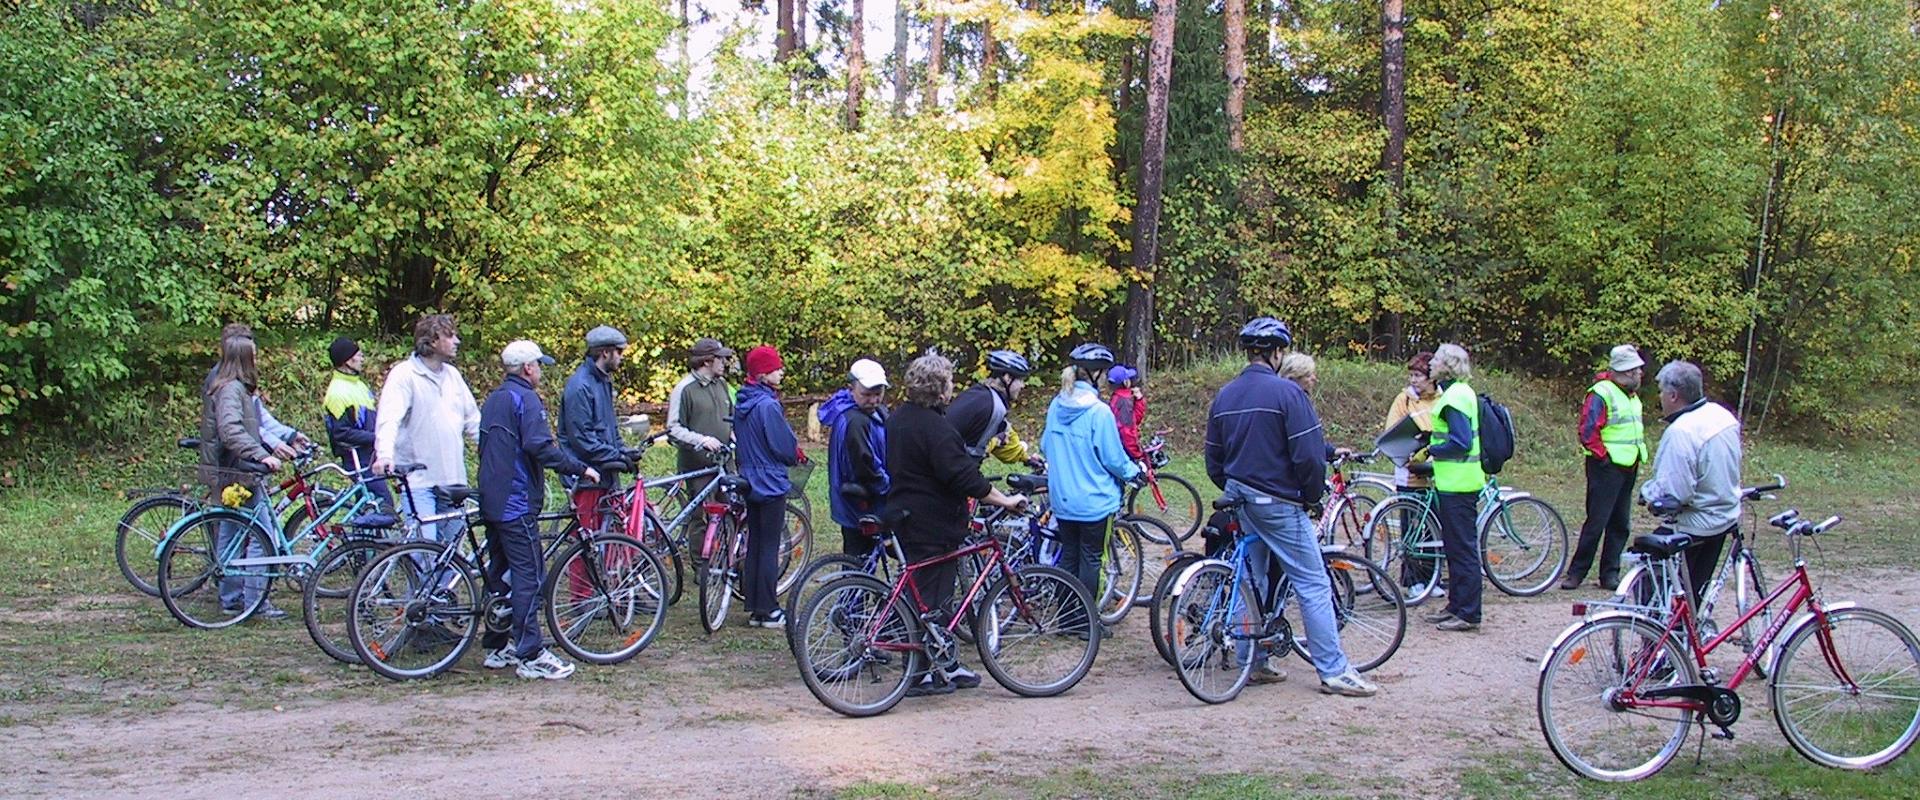 Vapramē (Vapramäe)-Vitipalu-Vellavere ekskursija ar velosipēdiem cauri vecajiem ciemiem